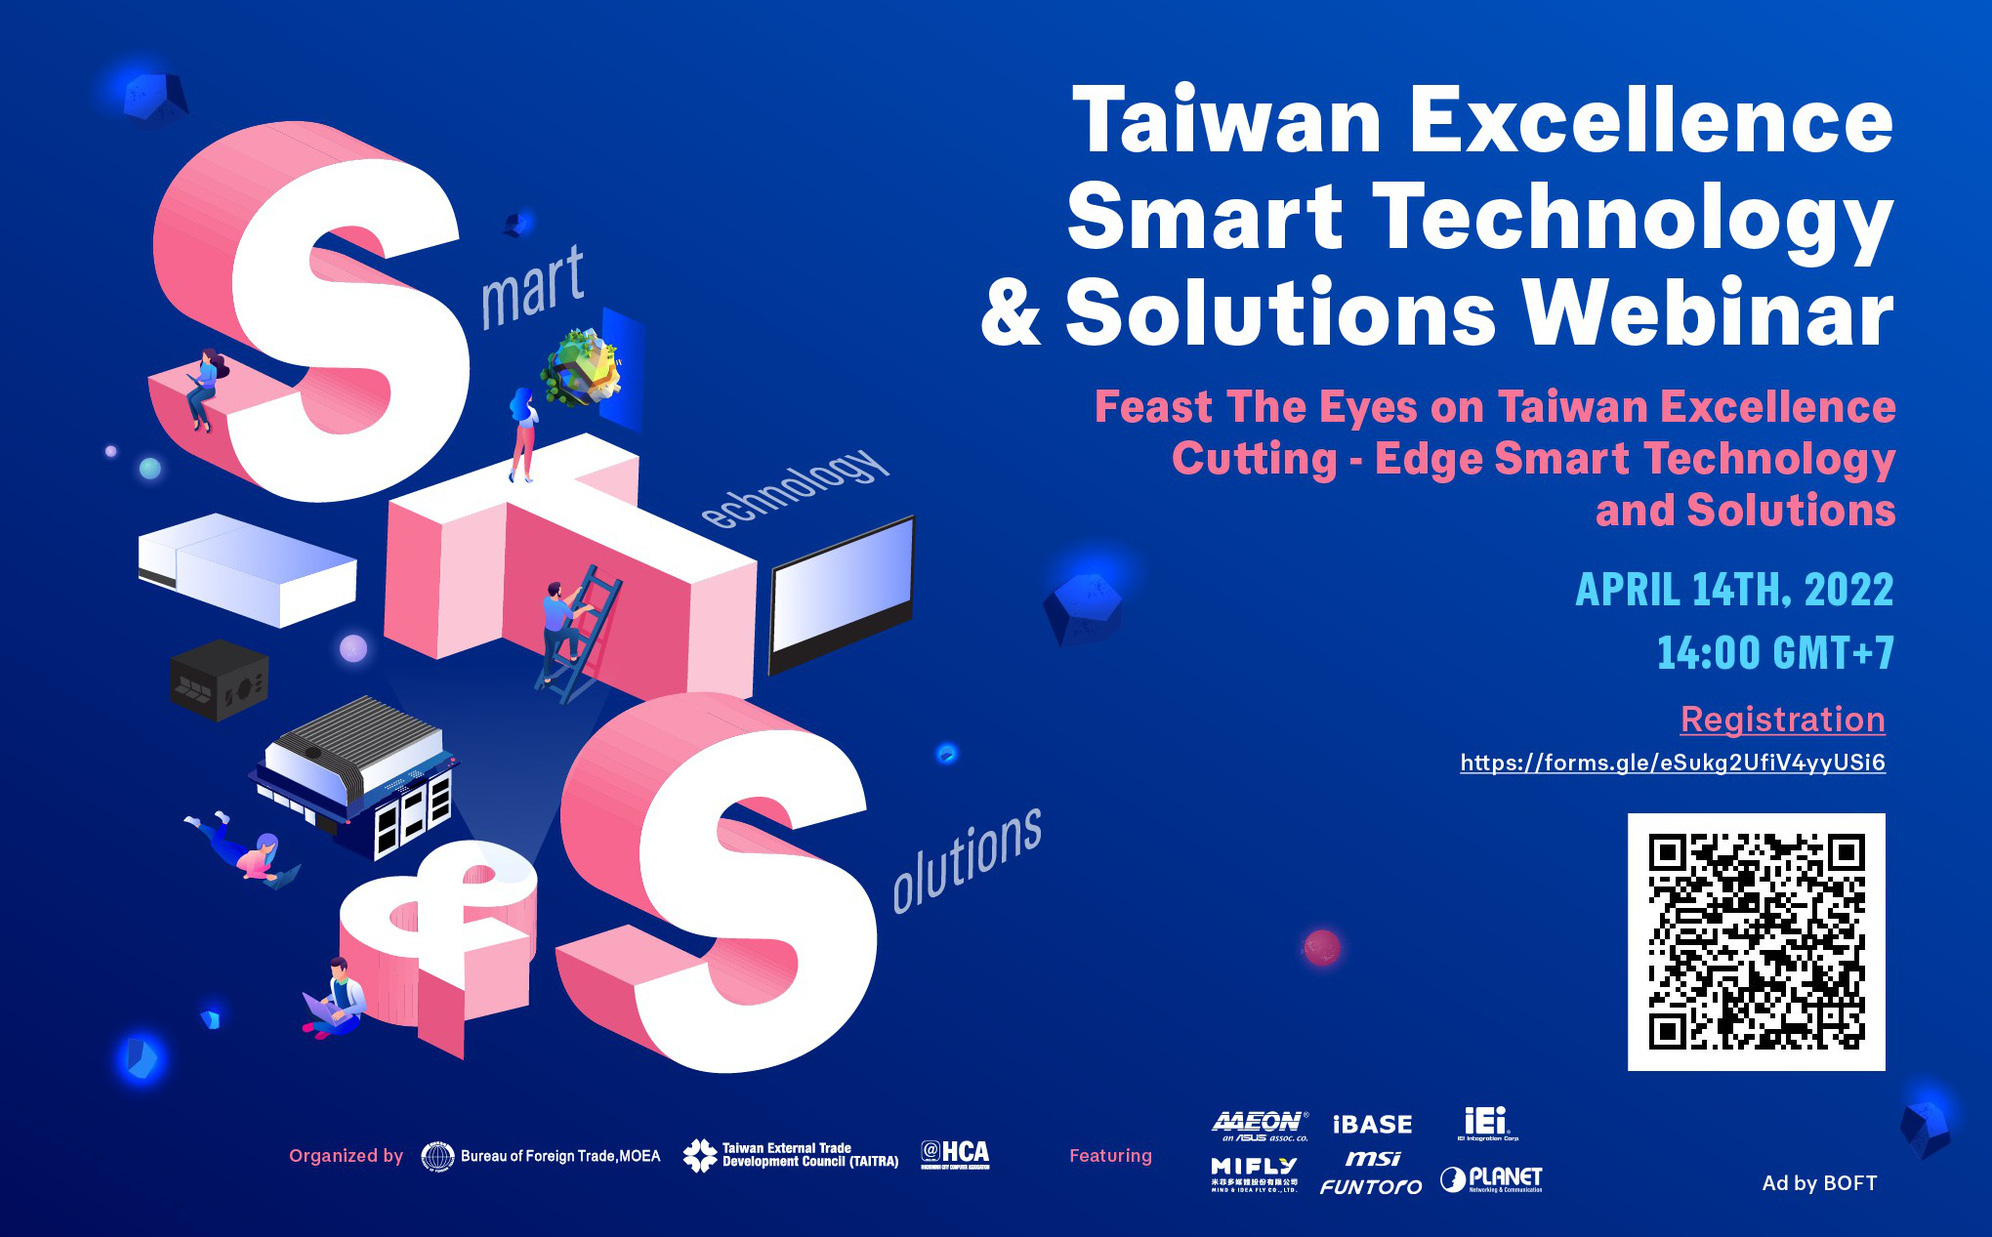 Taiwan Excellence: Giải pháp công nghệ thông minh từ các thương hiệu IEI, MiFly, MSI